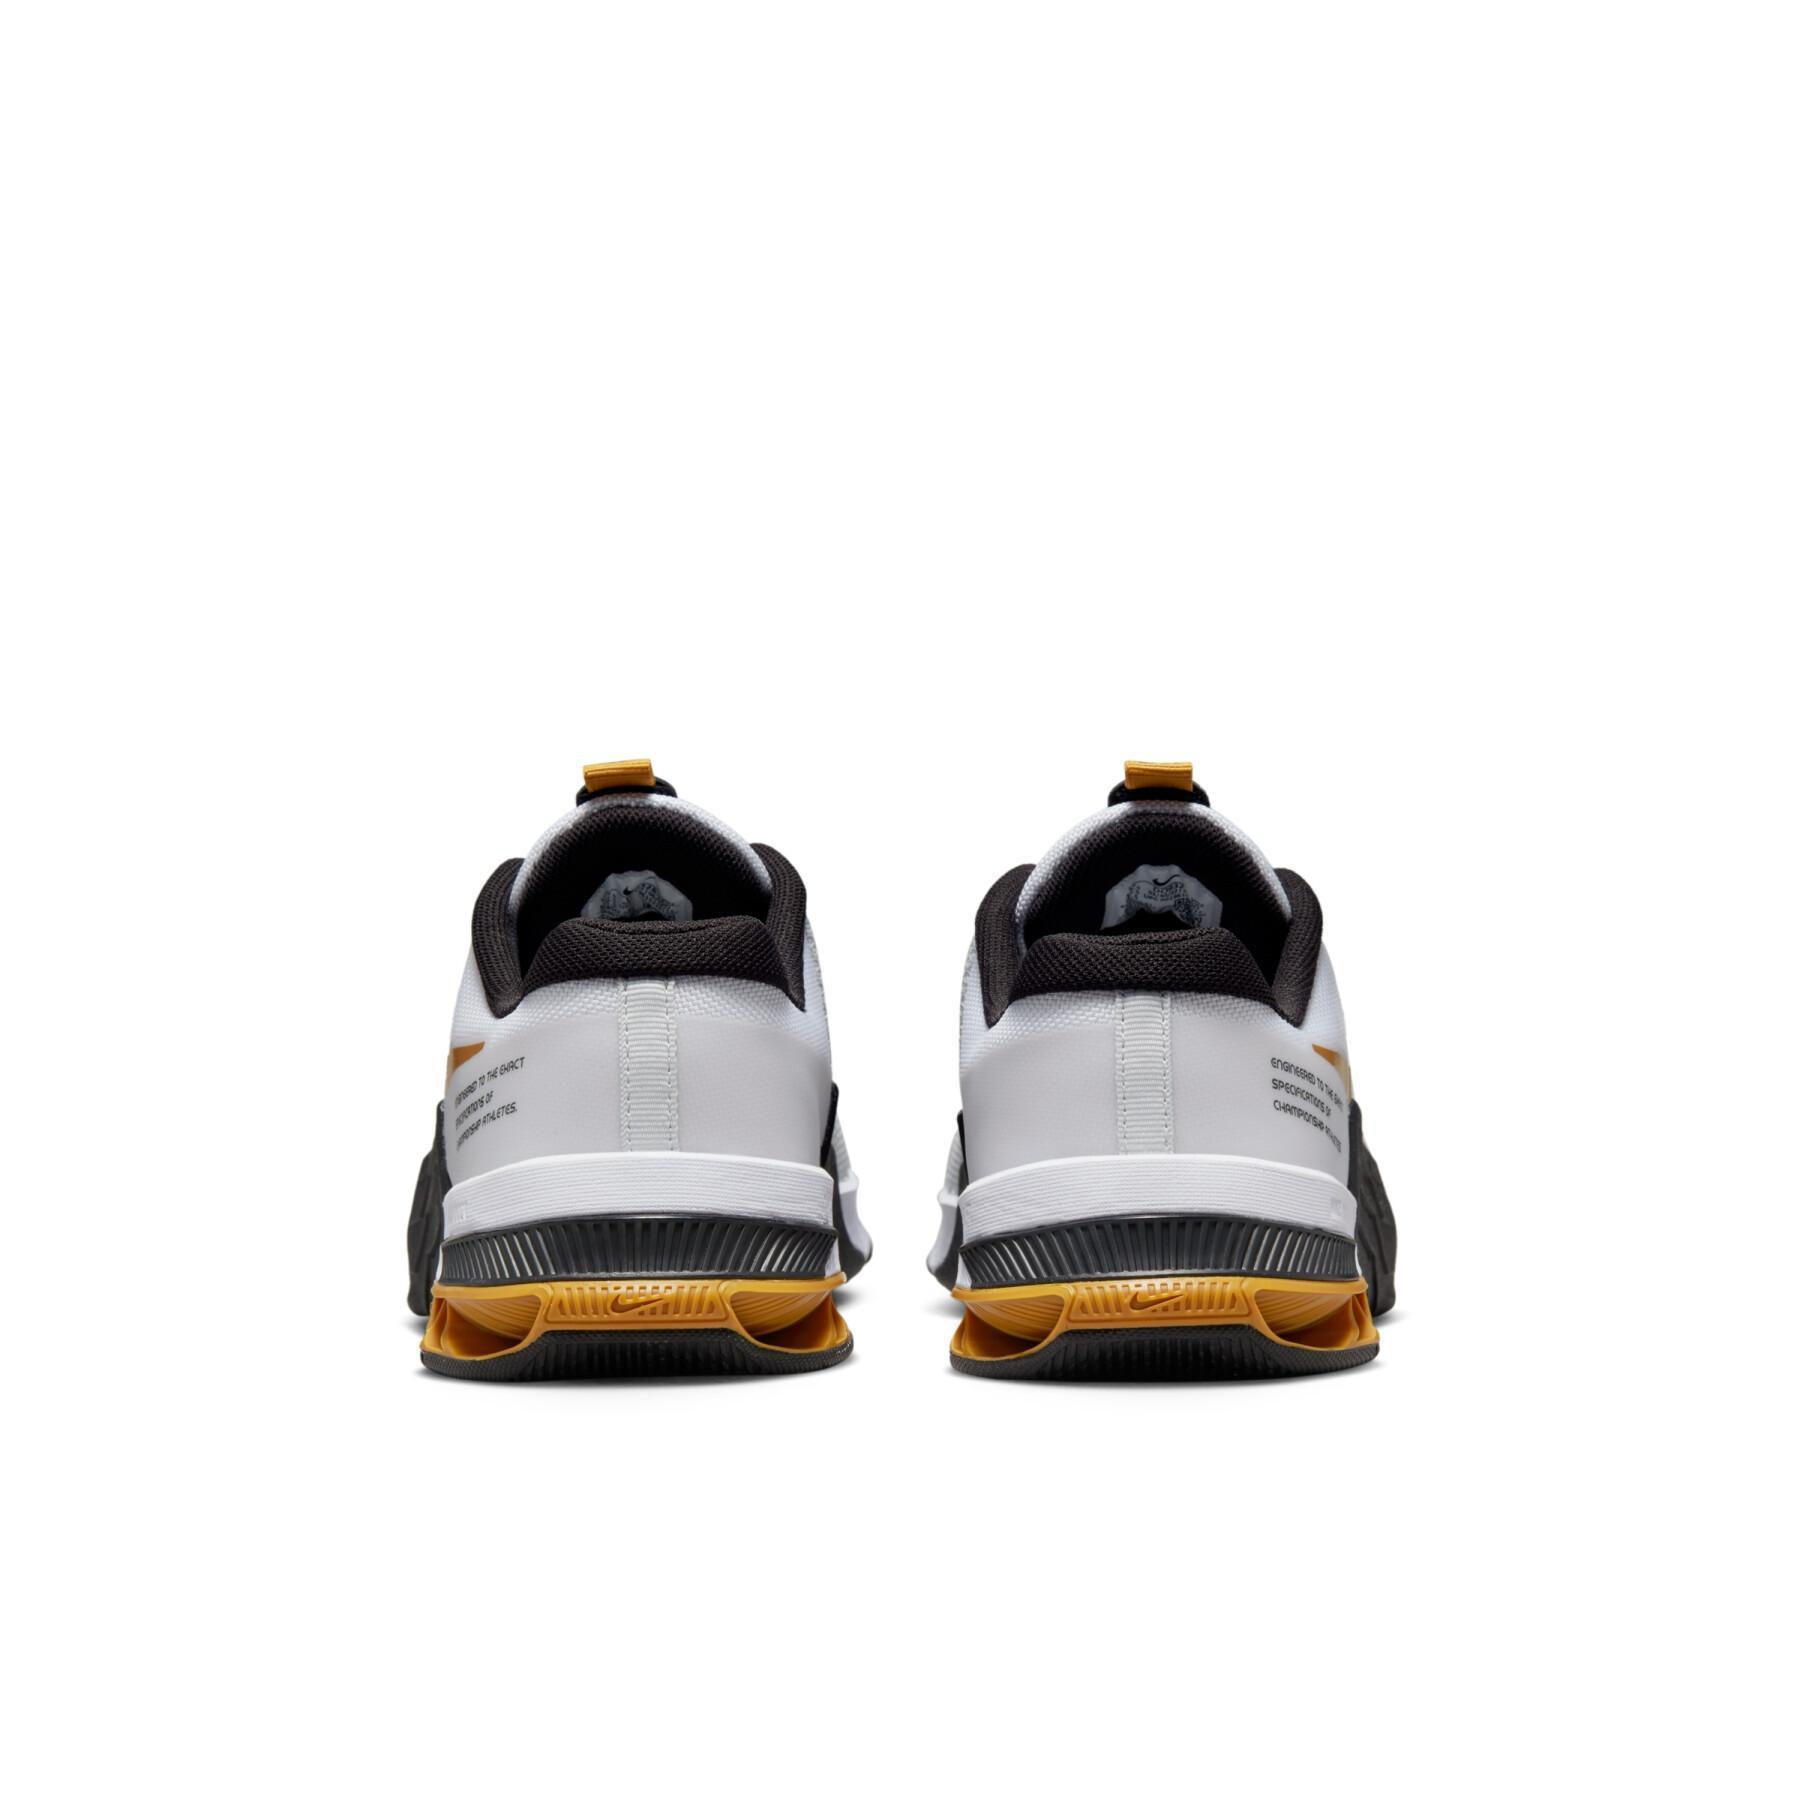 Zapatillas de cross training Nike Metcon 8